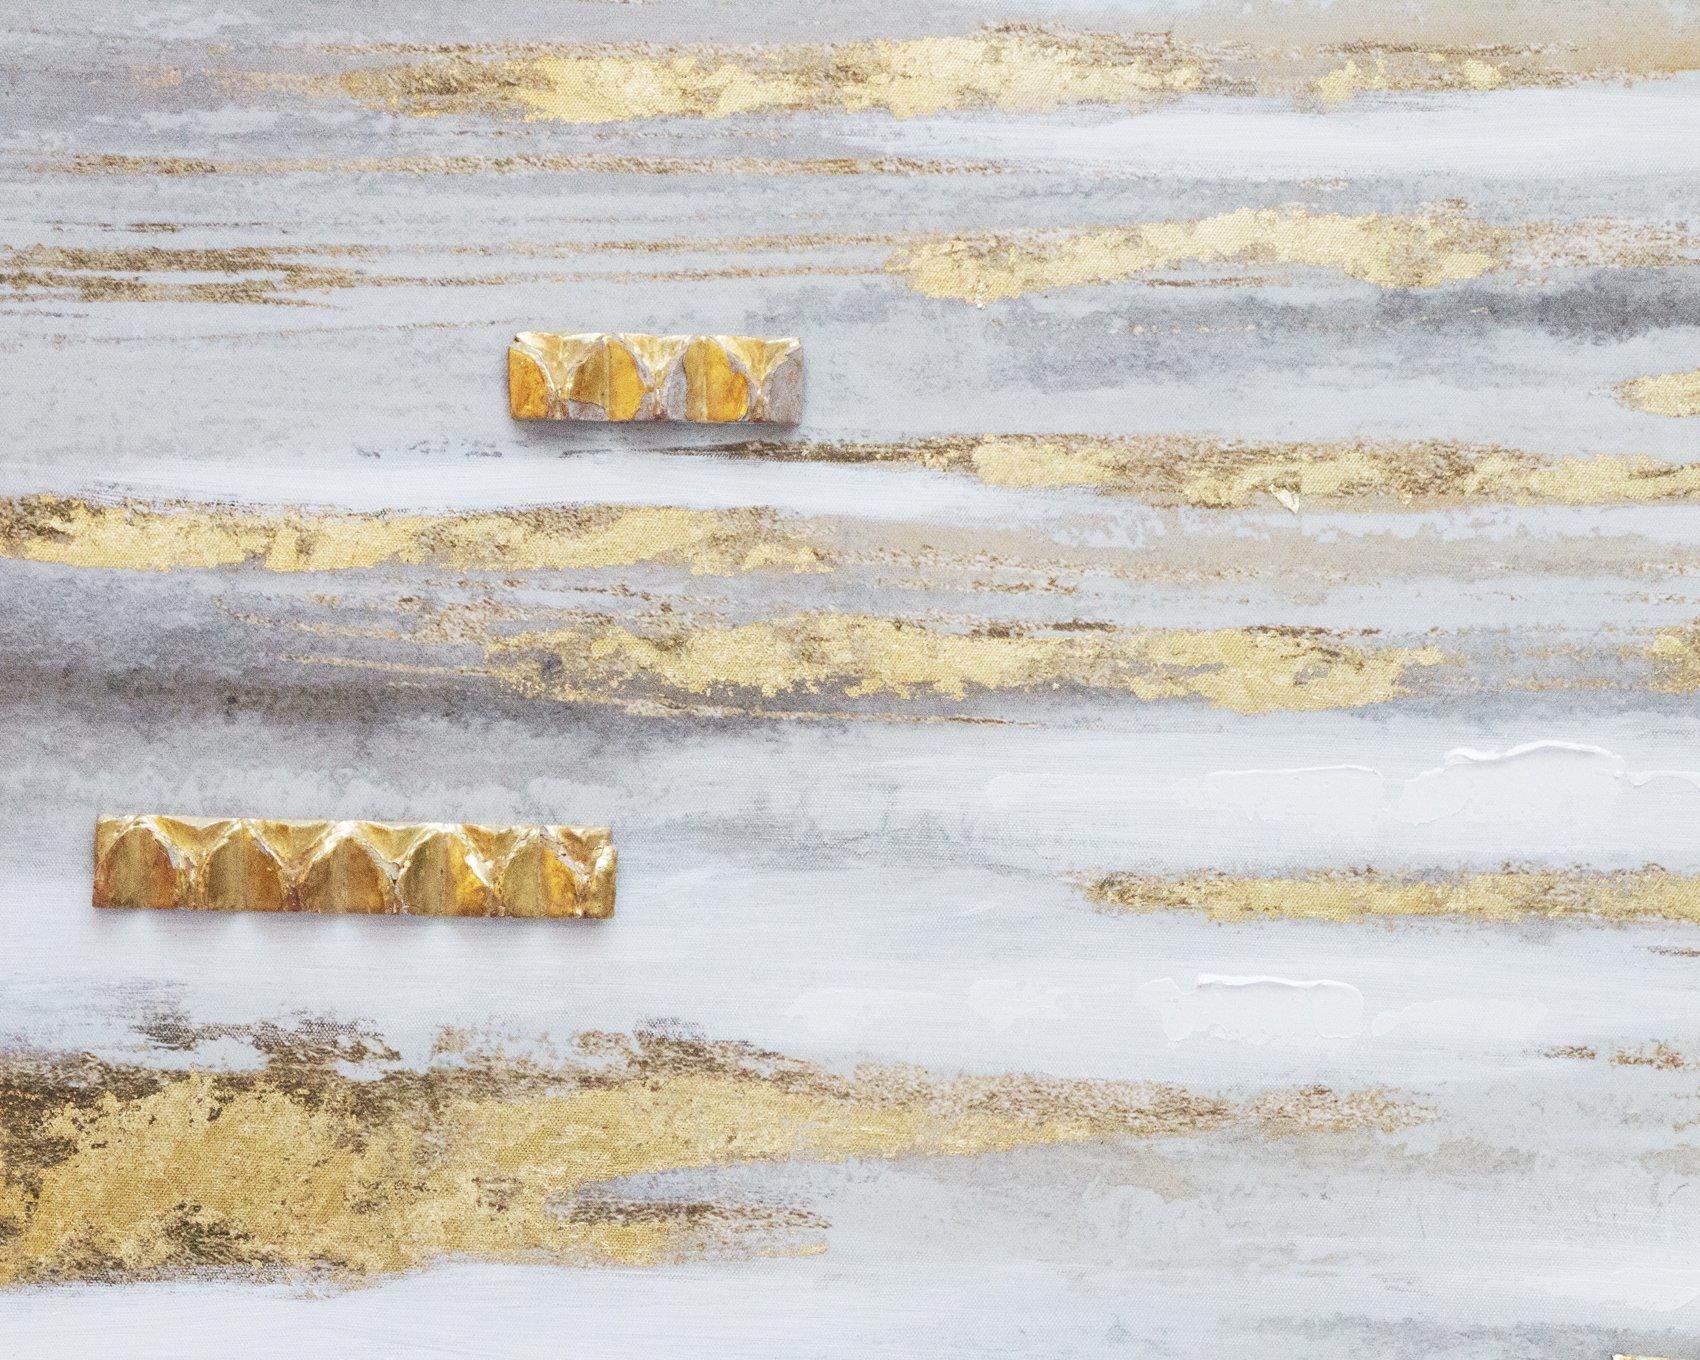 Peinture à la feuille d'or avec moulure de fragments italiens du XVIIIe siècle.

Le tableau présente des touches de couleurs dorées, grises et blanches sur la toile, avec des moulures tridimensionnelles en forme de fragments italiens du XVIIIe